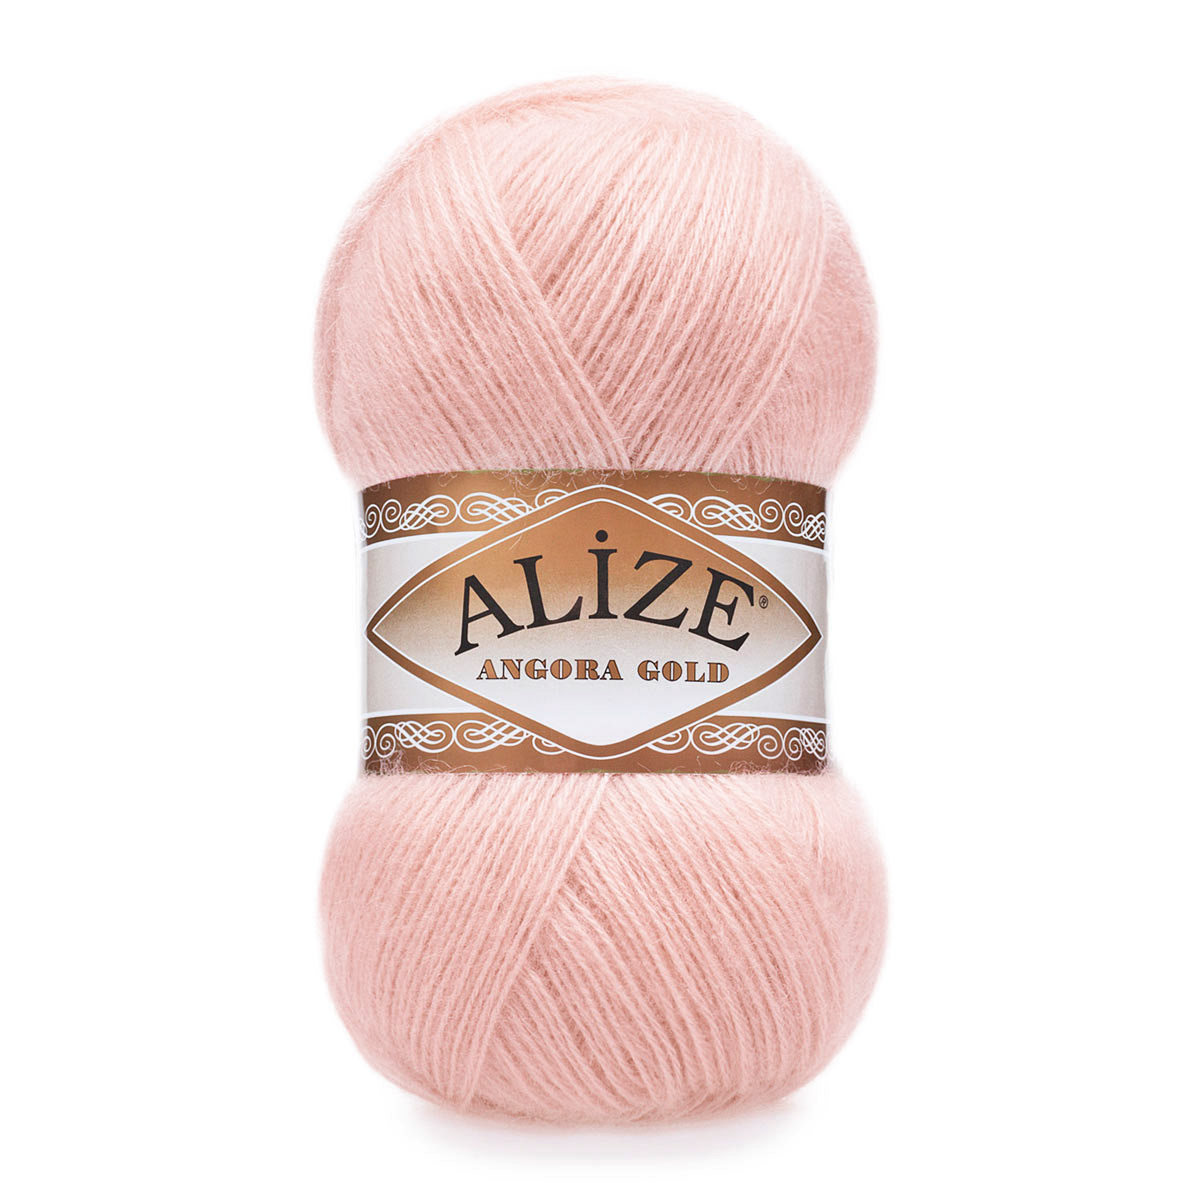 Пряжа Alize мягкая теплая для шарфов кардиганов Angora Gold 100 гр 550 м 5 мотков 271 жемчужно-розовый - фото 6